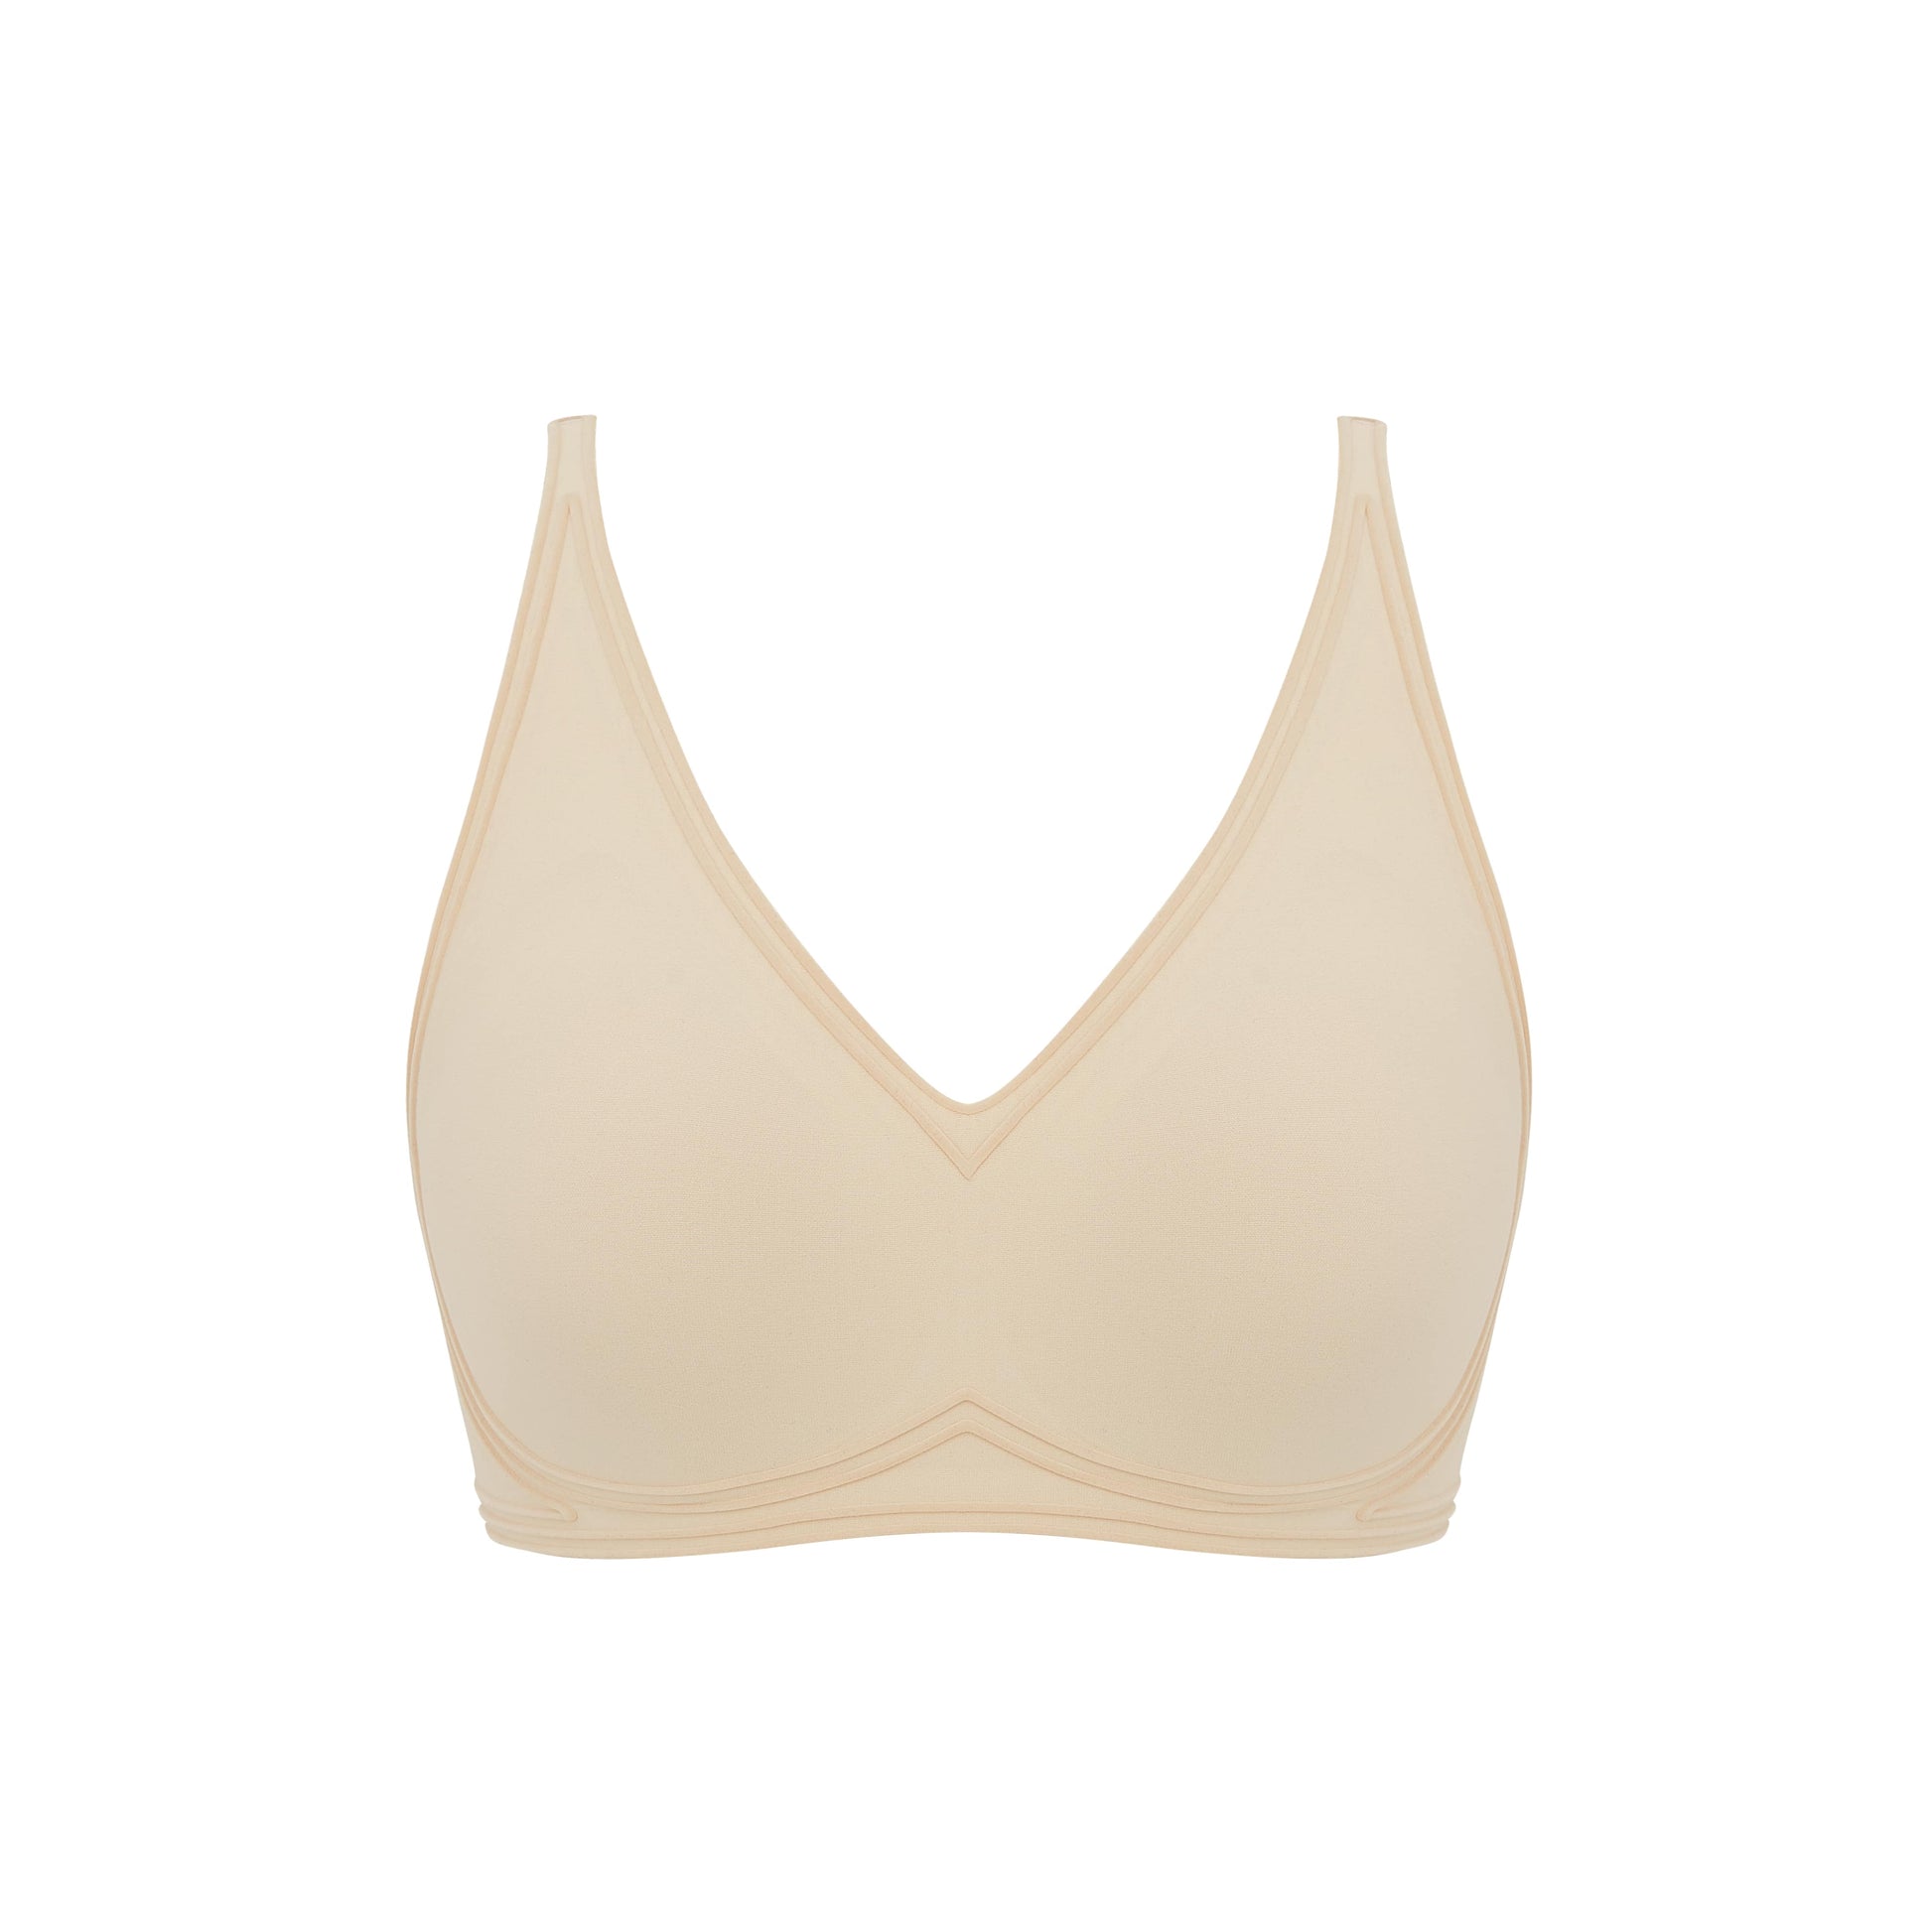 Flat lay image of beige bra with plunge neckline